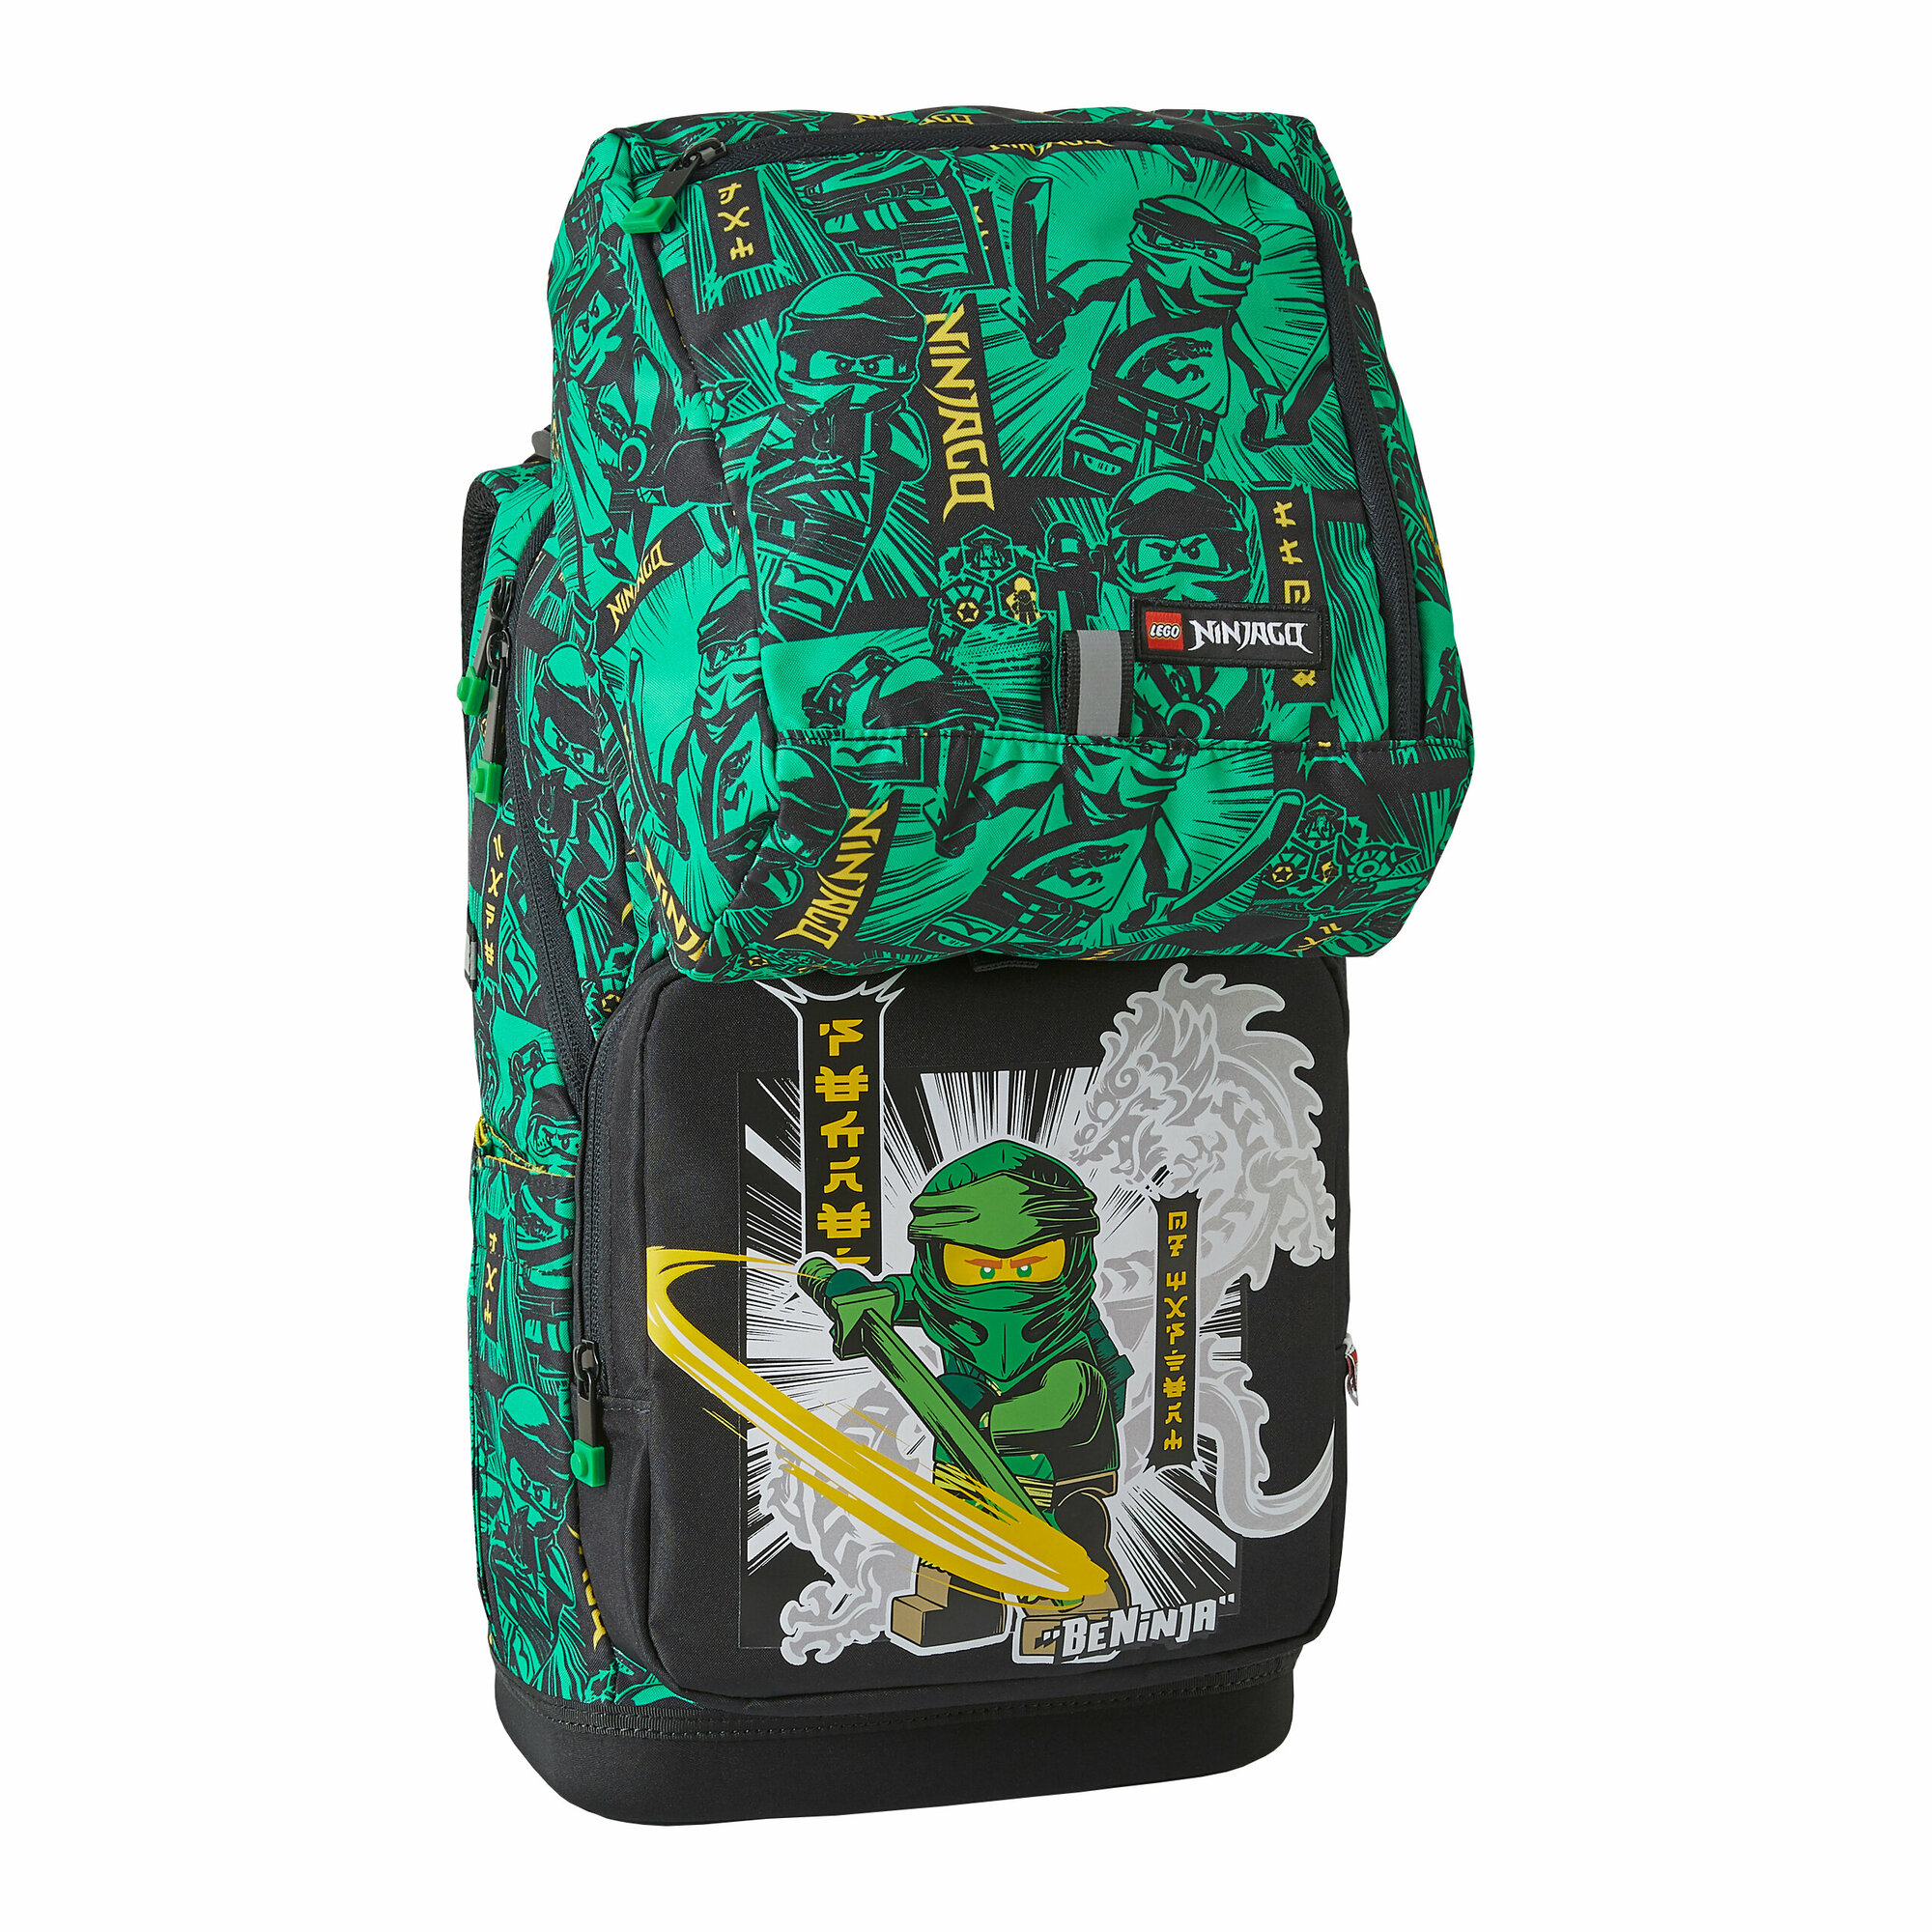 Рюкзак школьный LEGO Optimo NINJAGO Green 2 предмета 20238-2301